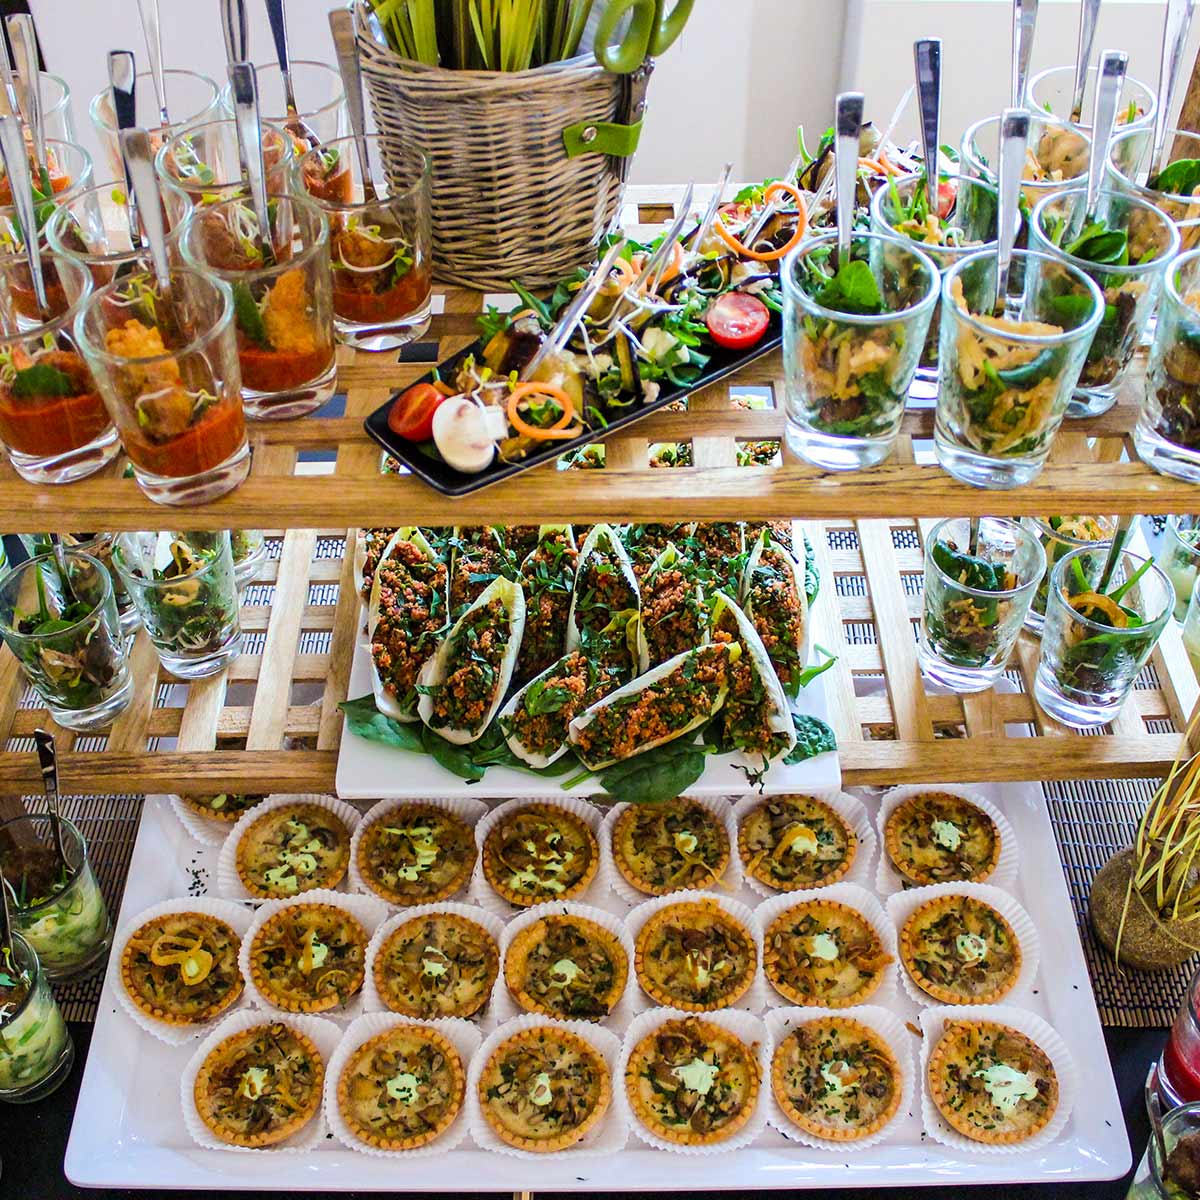 Die Abbildung zeigt ein Buffet und veranschaulicht das Thema: „Catering-Angebote für Firmen in Berlin“.